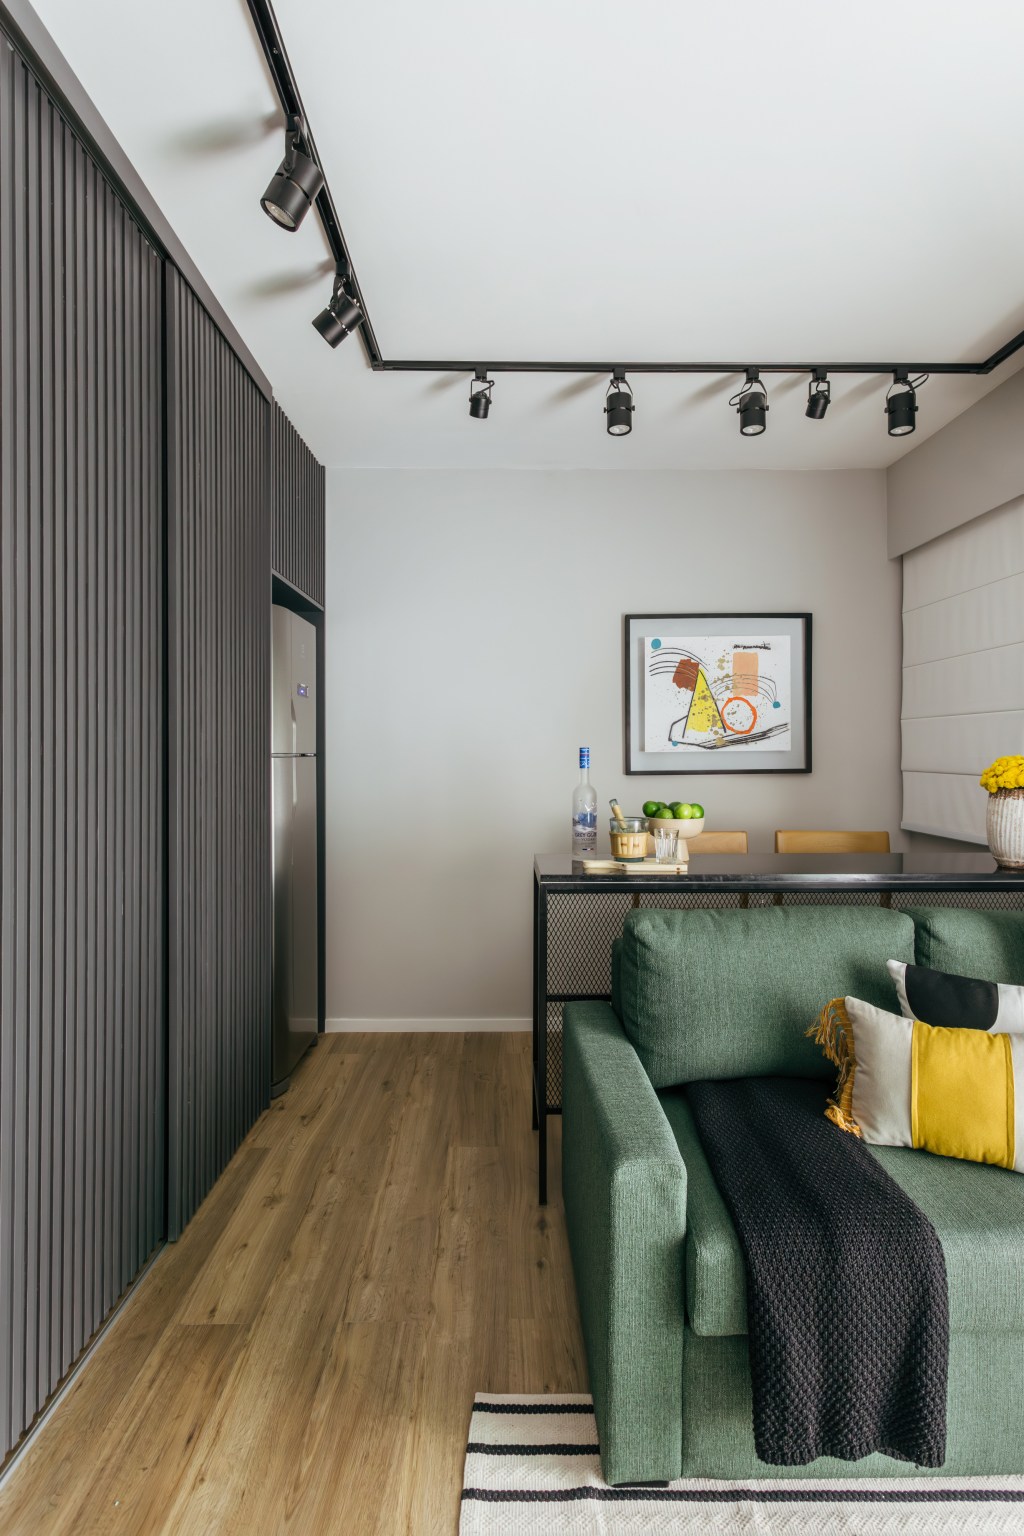 Cozinha se esconde dentro do armário neste apê de 35 m², Projeto de Ikeda Arquitetura. Na foto, sala de estar com bancada de serralheria, cozinha camuflada e sofá verde.